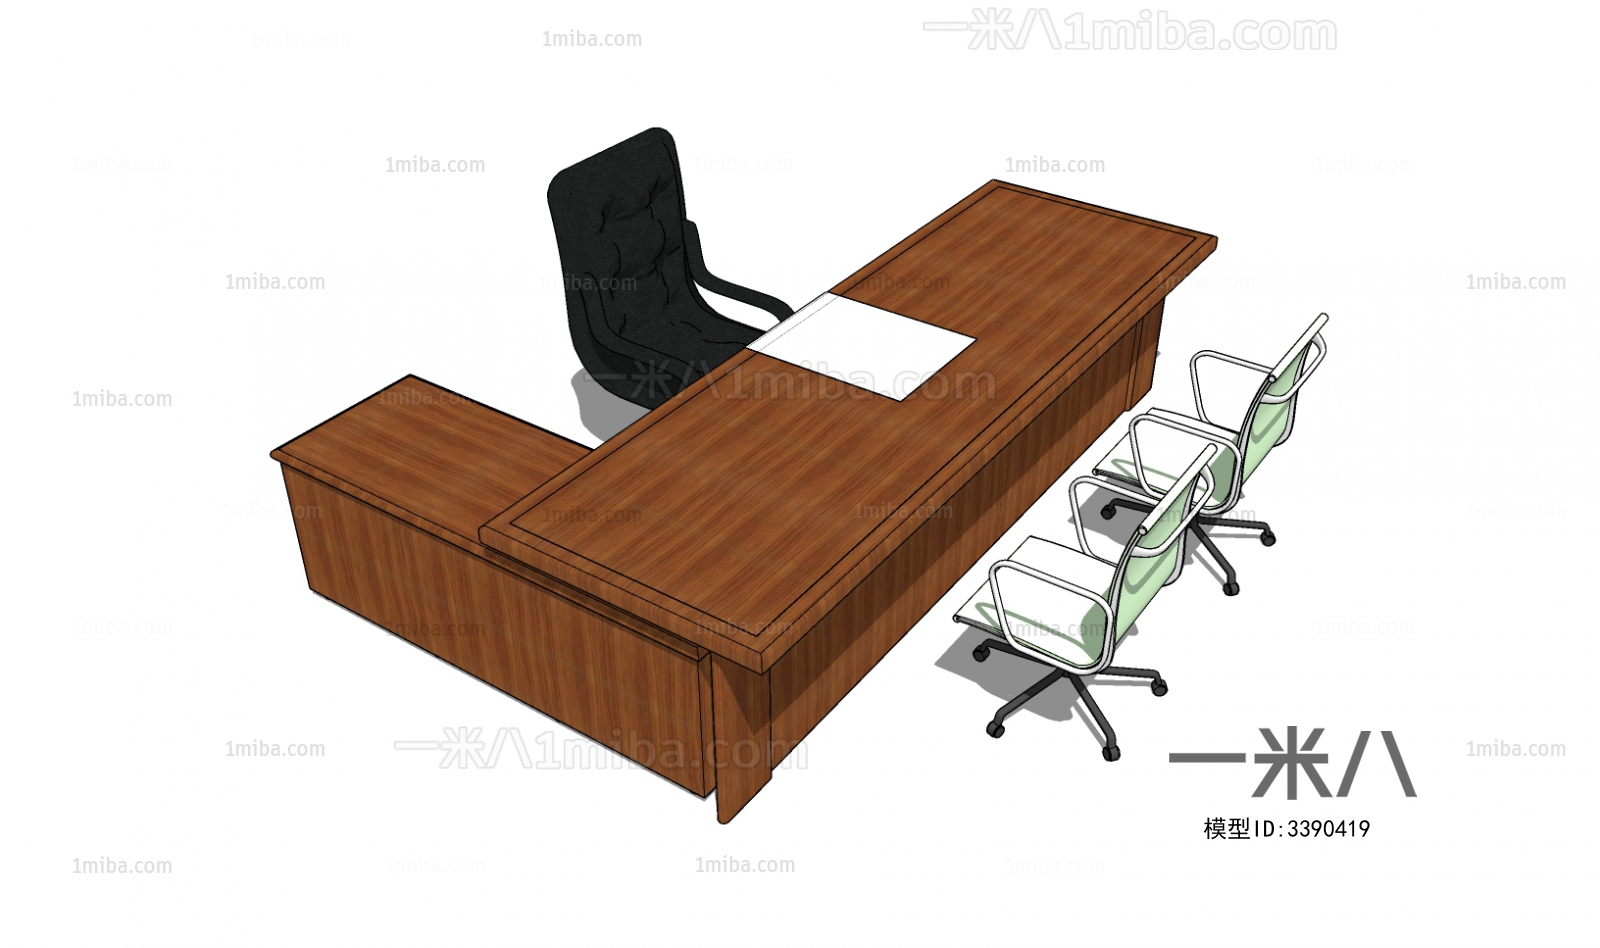 现代办公桌椅组合